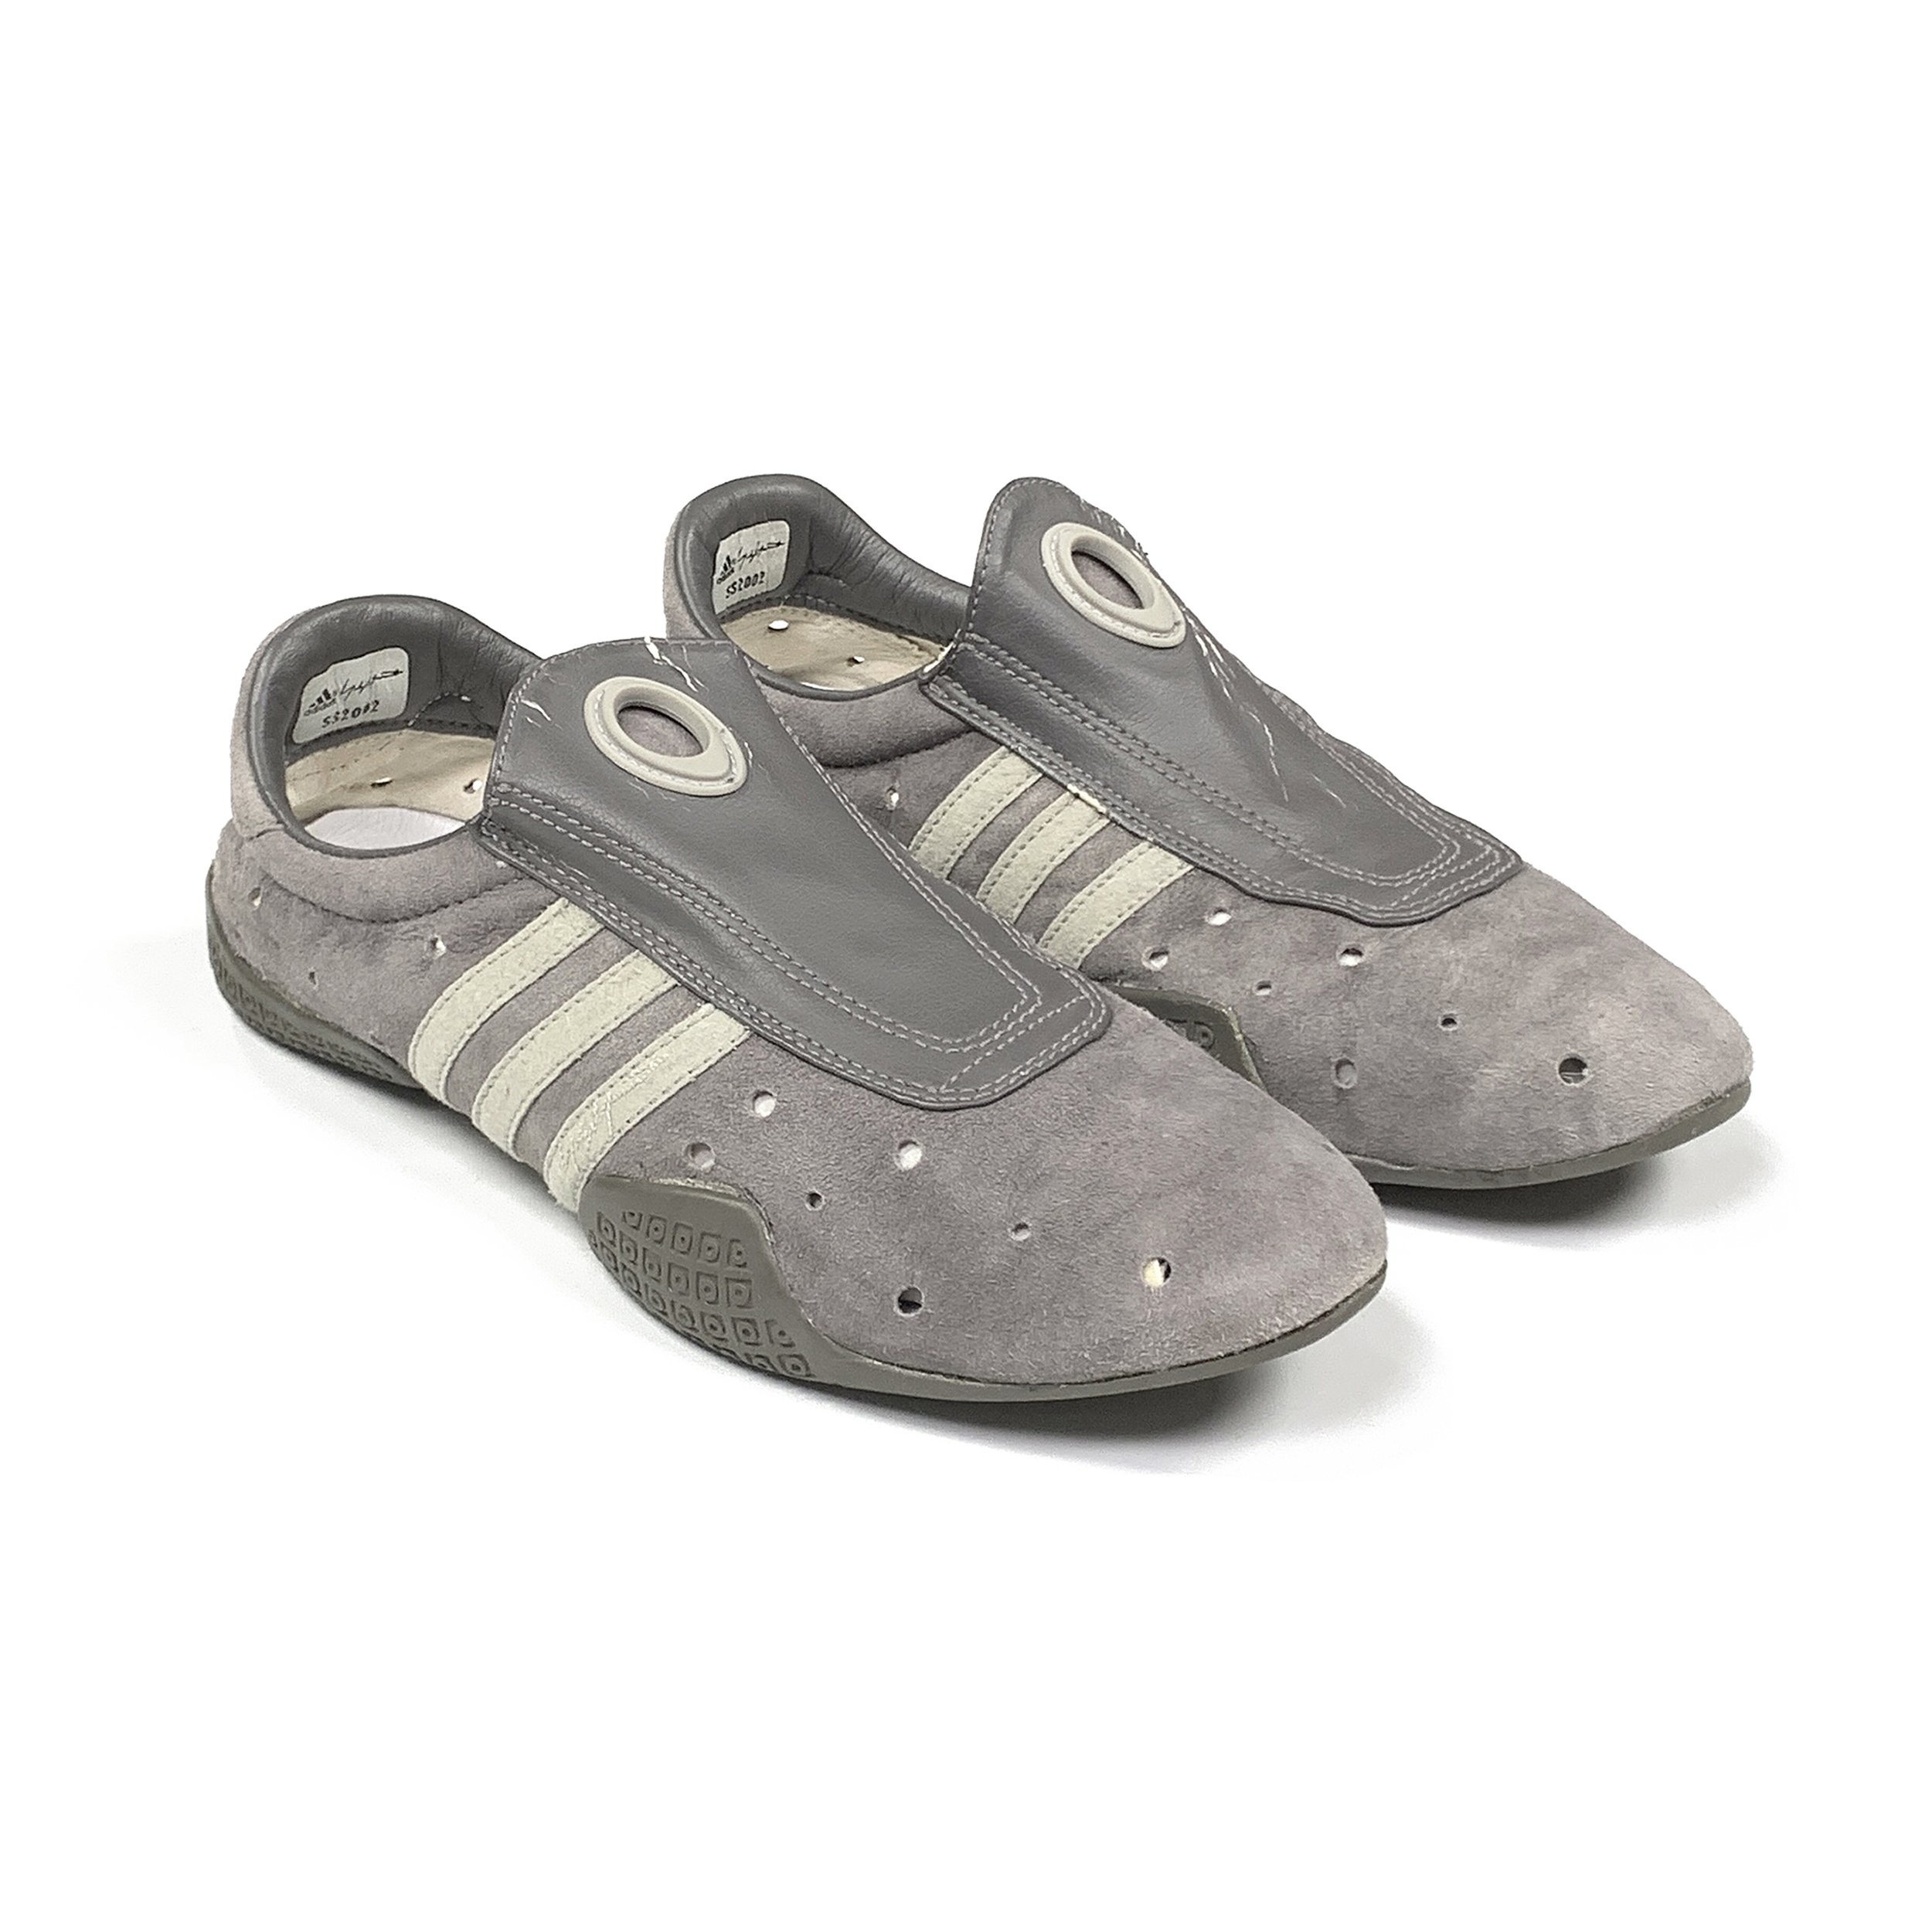 Adidas by Yohji Yamamoto 2002 Slip-On Racing Shoes — GAIJIN RECYCLING